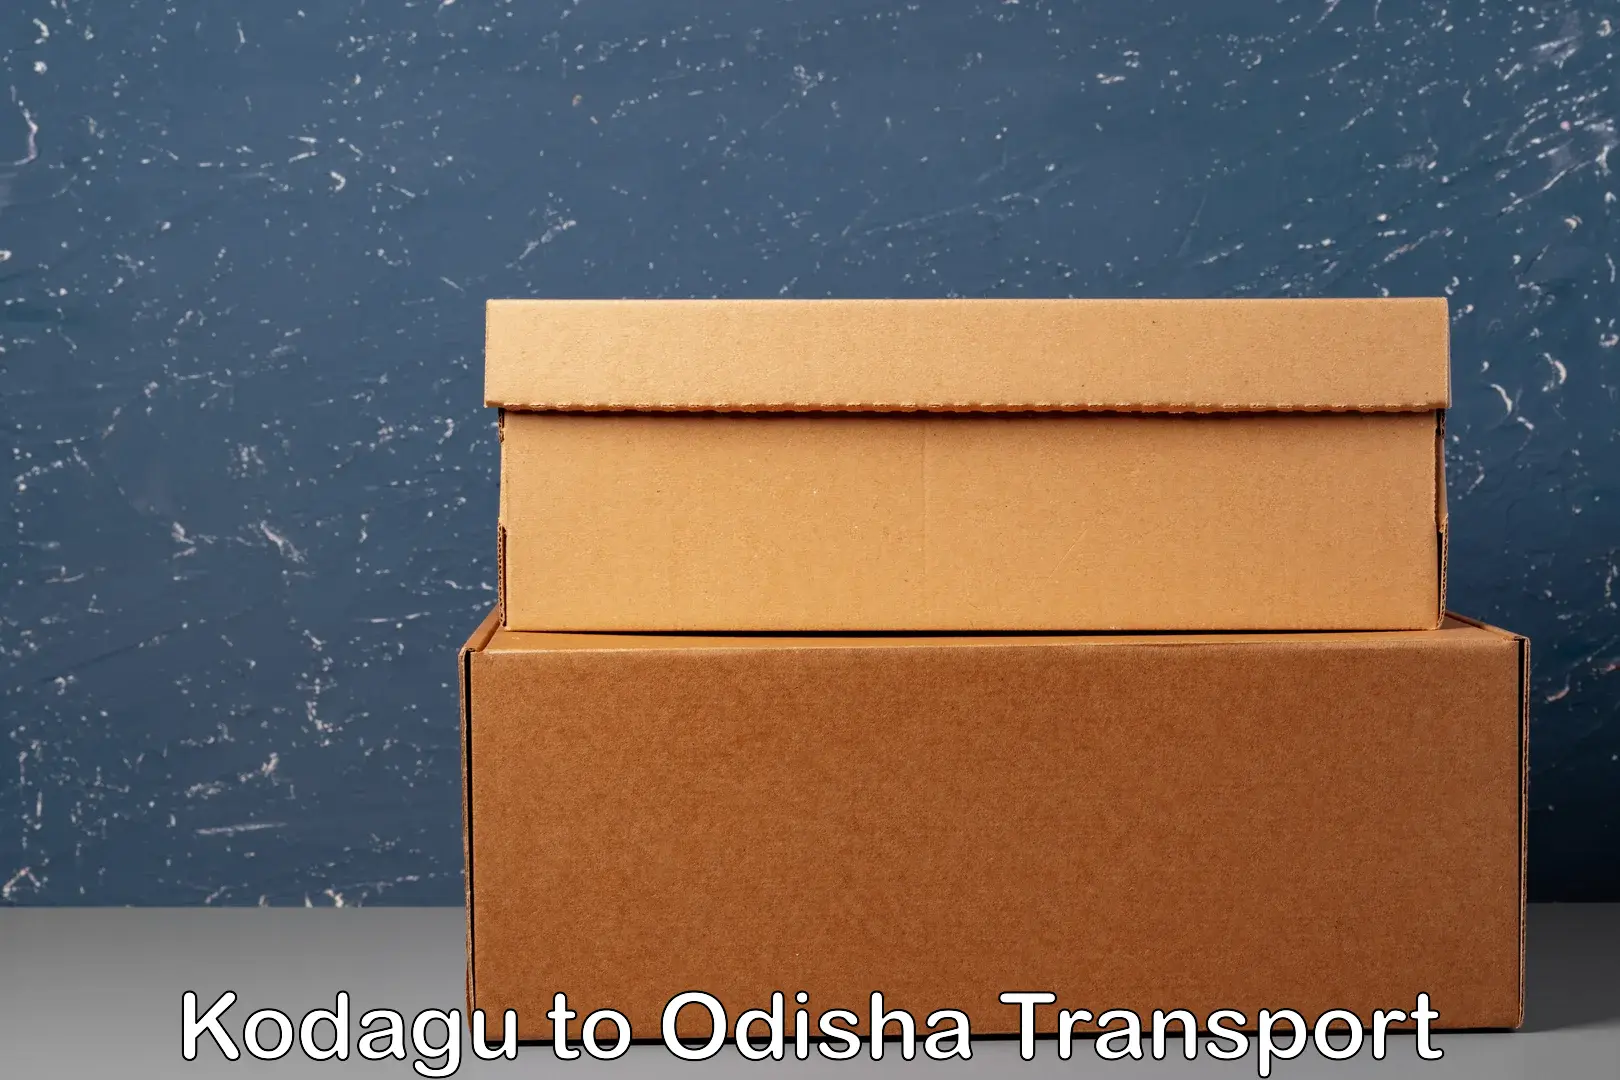 Container transport service Kodagu to Bissam Cuttack